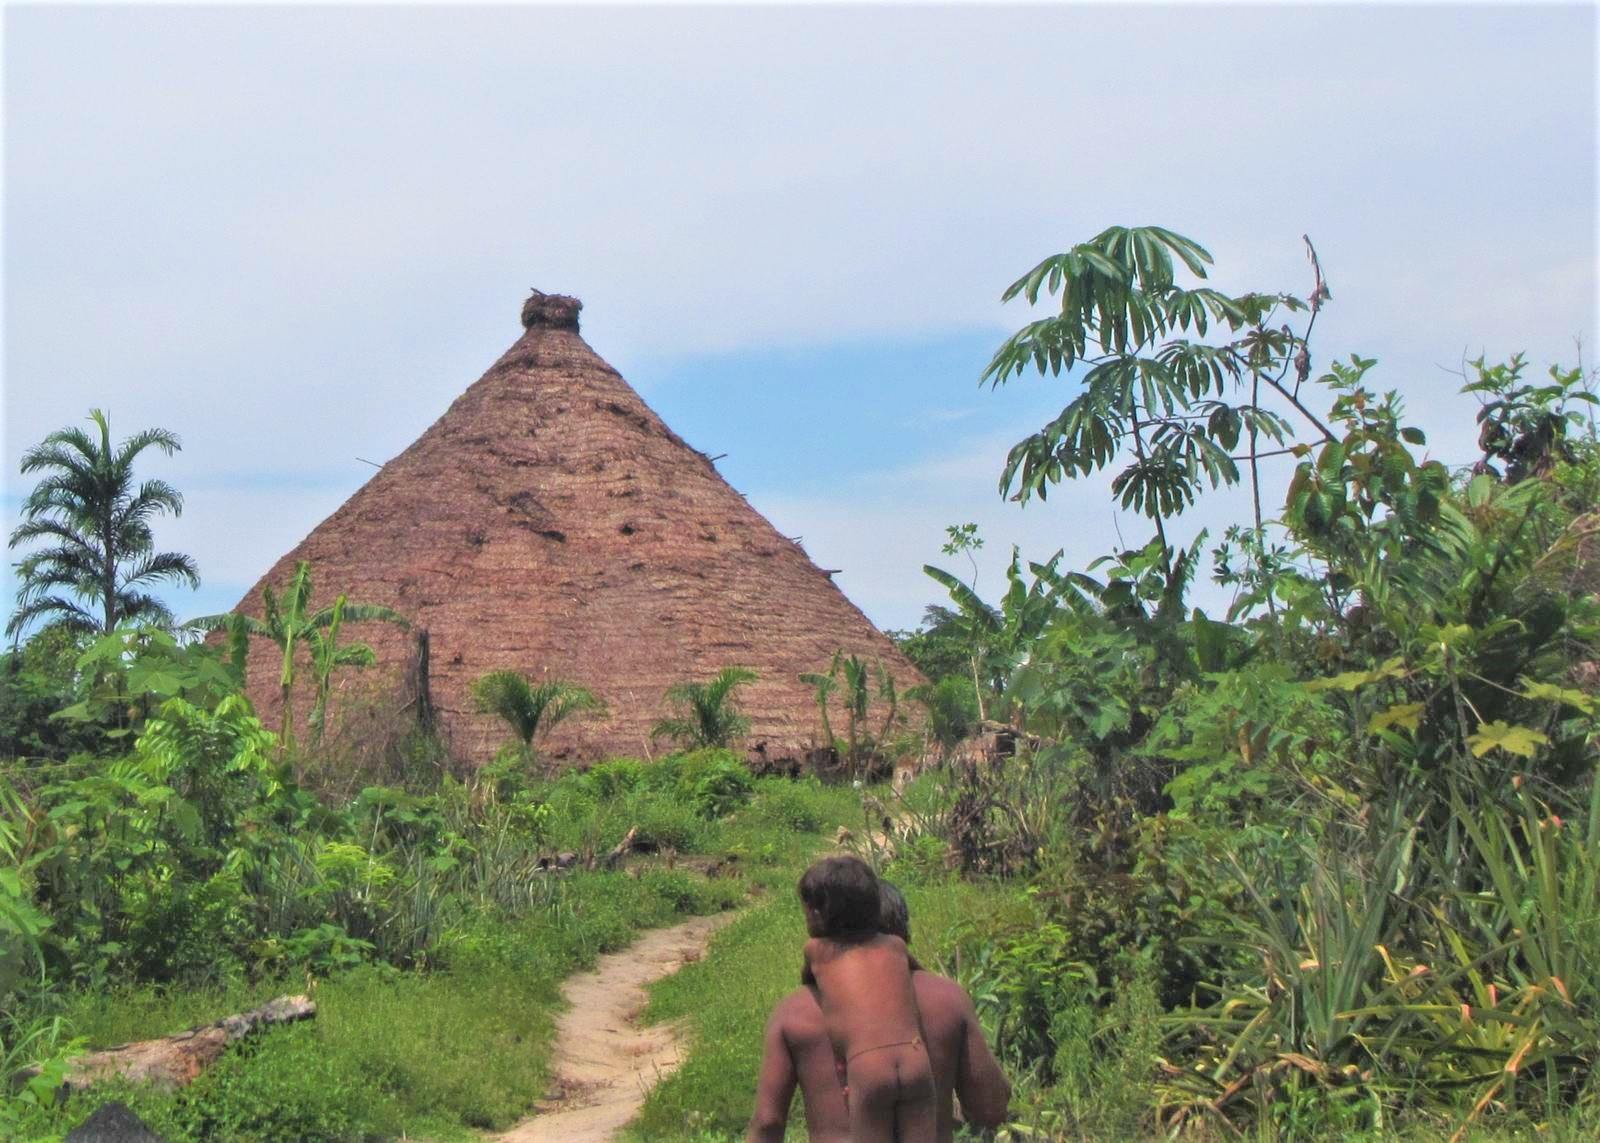 ‘Fui obrigado a entrar em terra indígena com um missionário’, diz servidor da Funai